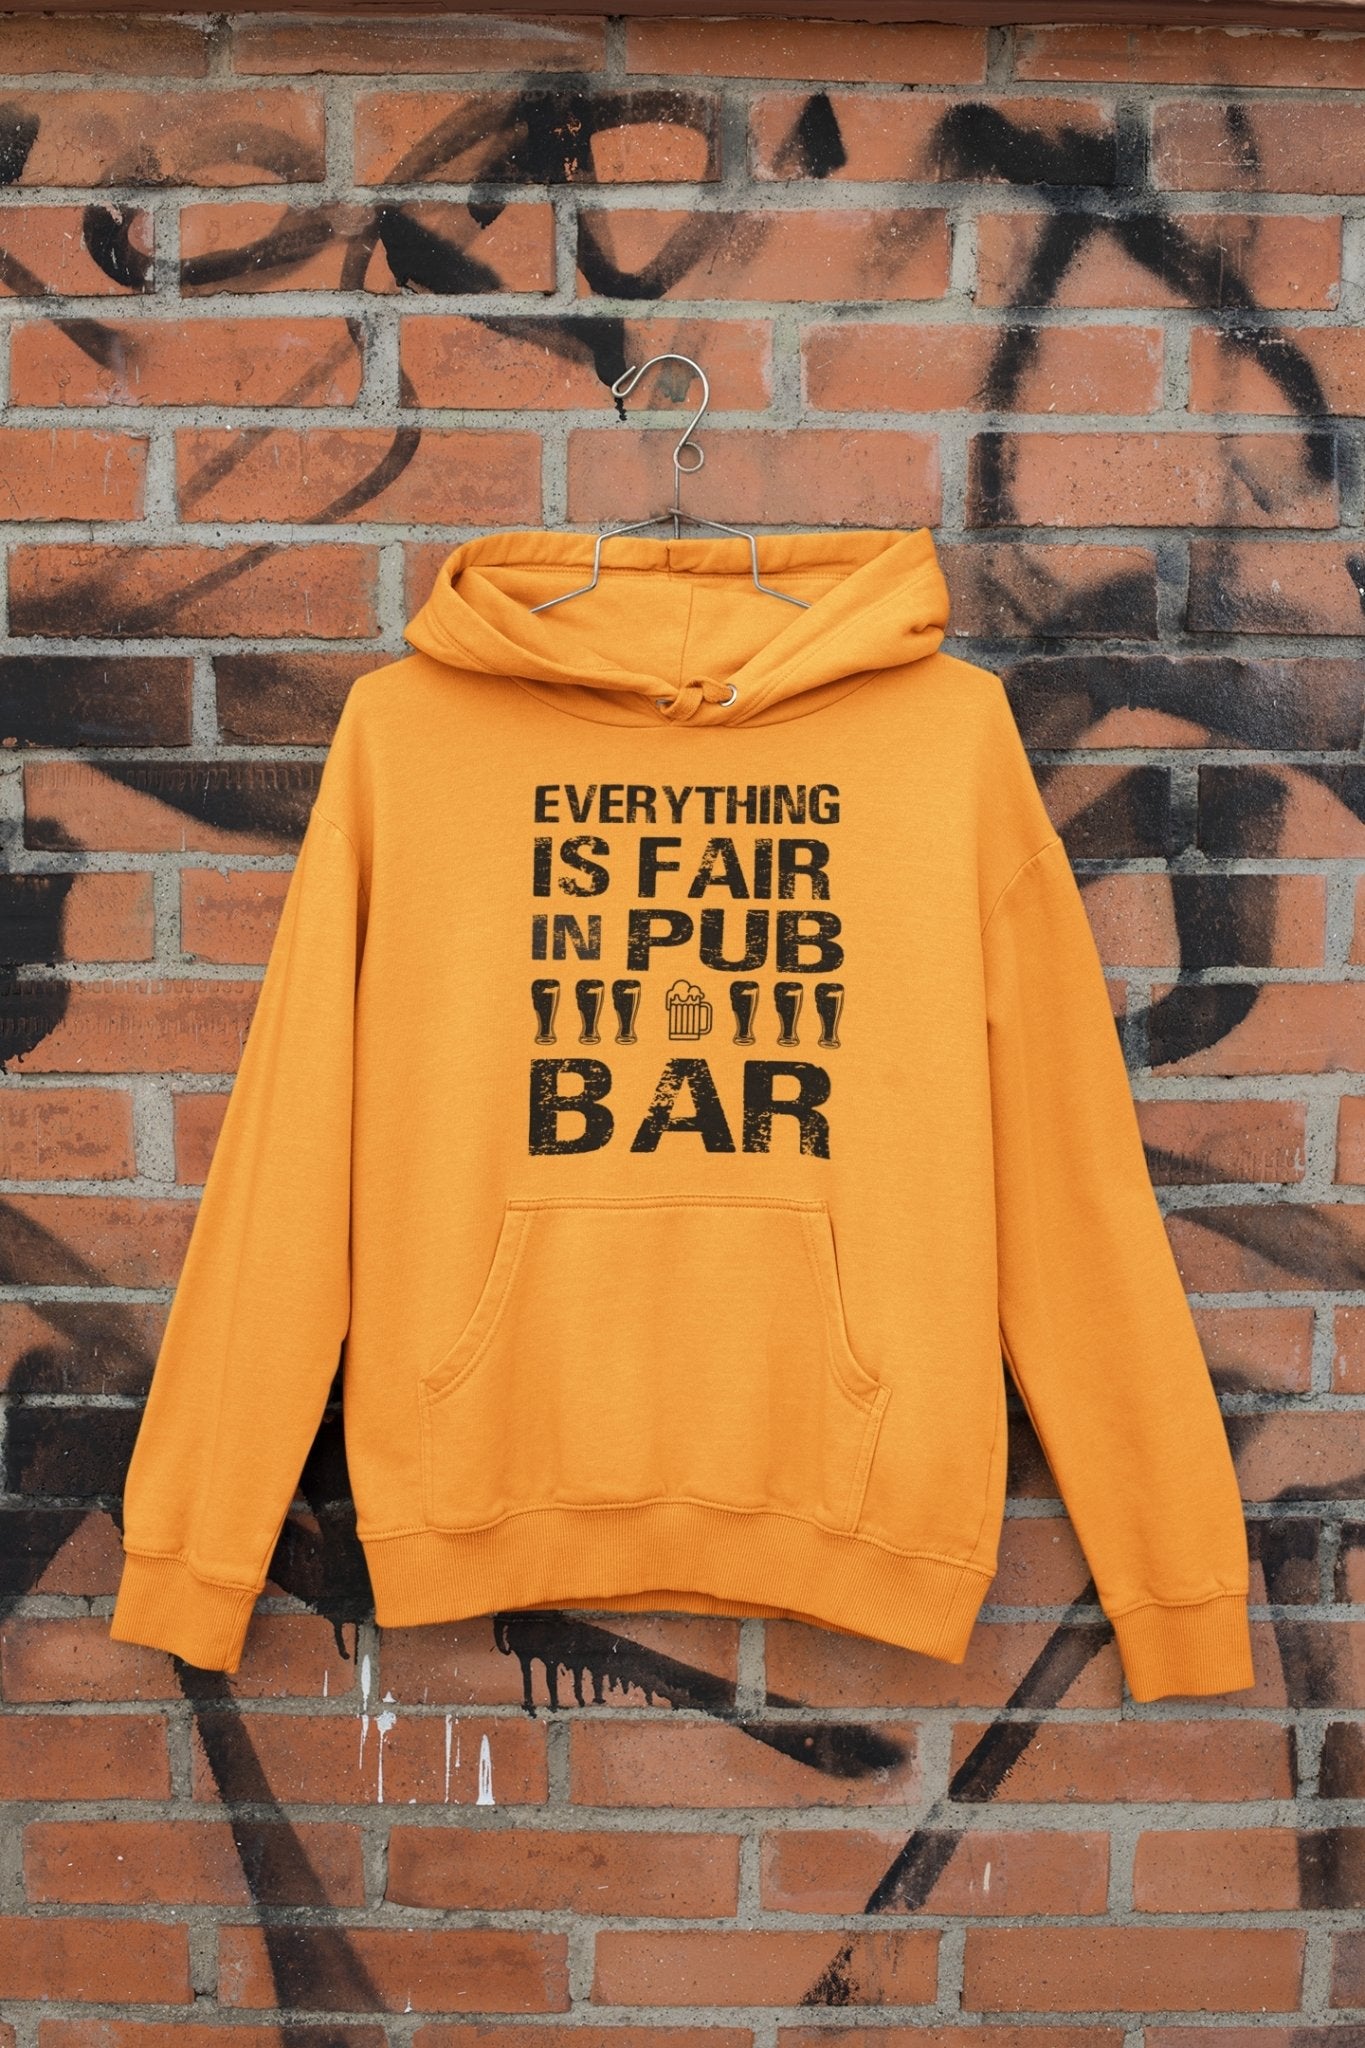 Everthing Is Fair In Pub And Bar Hoodies for Women-FunkyTeesClub - Funky Tees Club